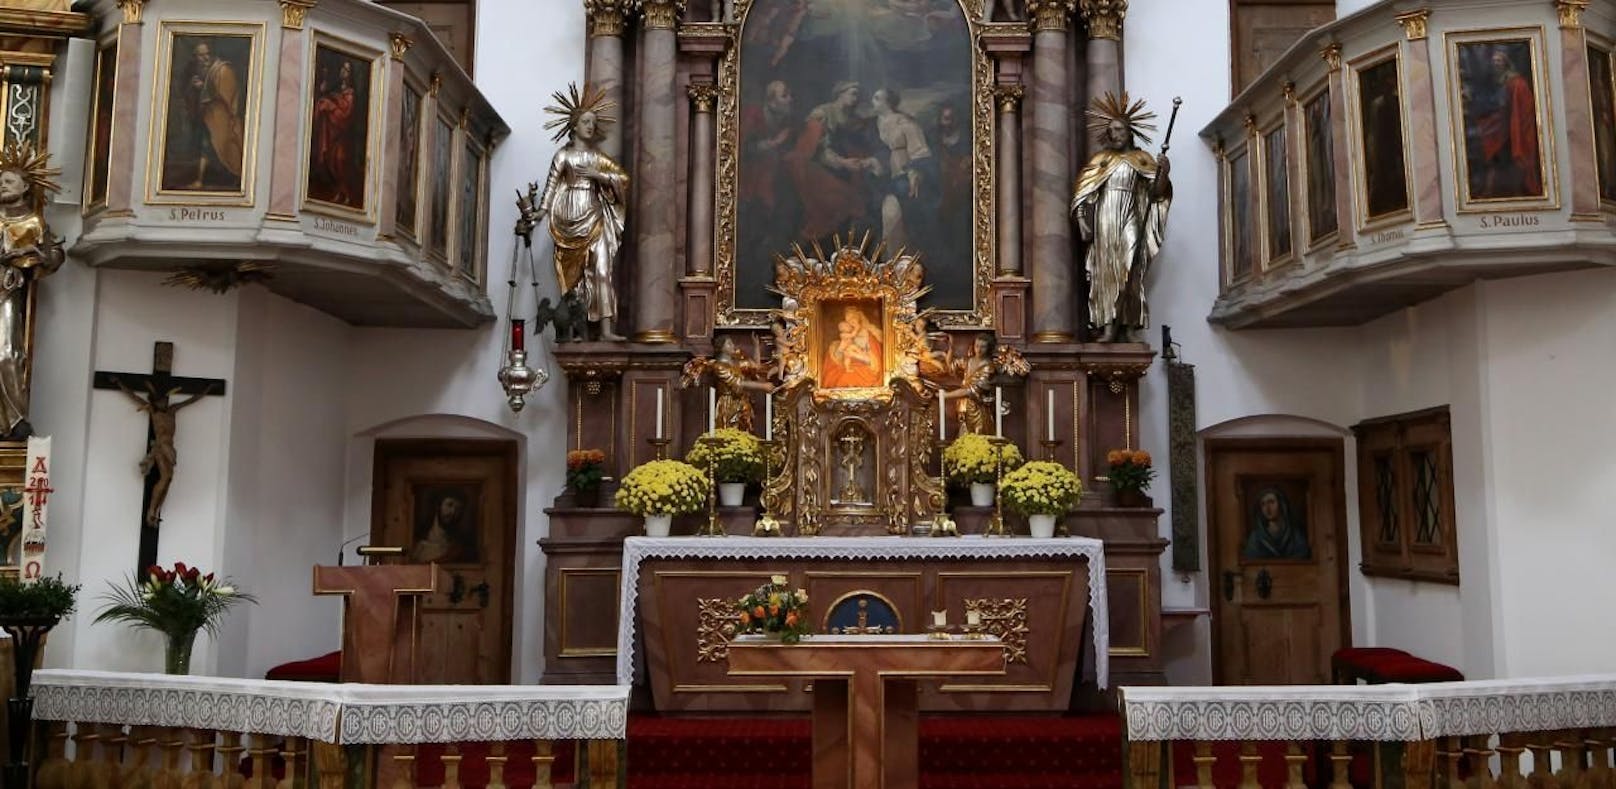 Der Altar der Wallfahrtskirche Maria Hilf / Kleinholz in Kufstein.